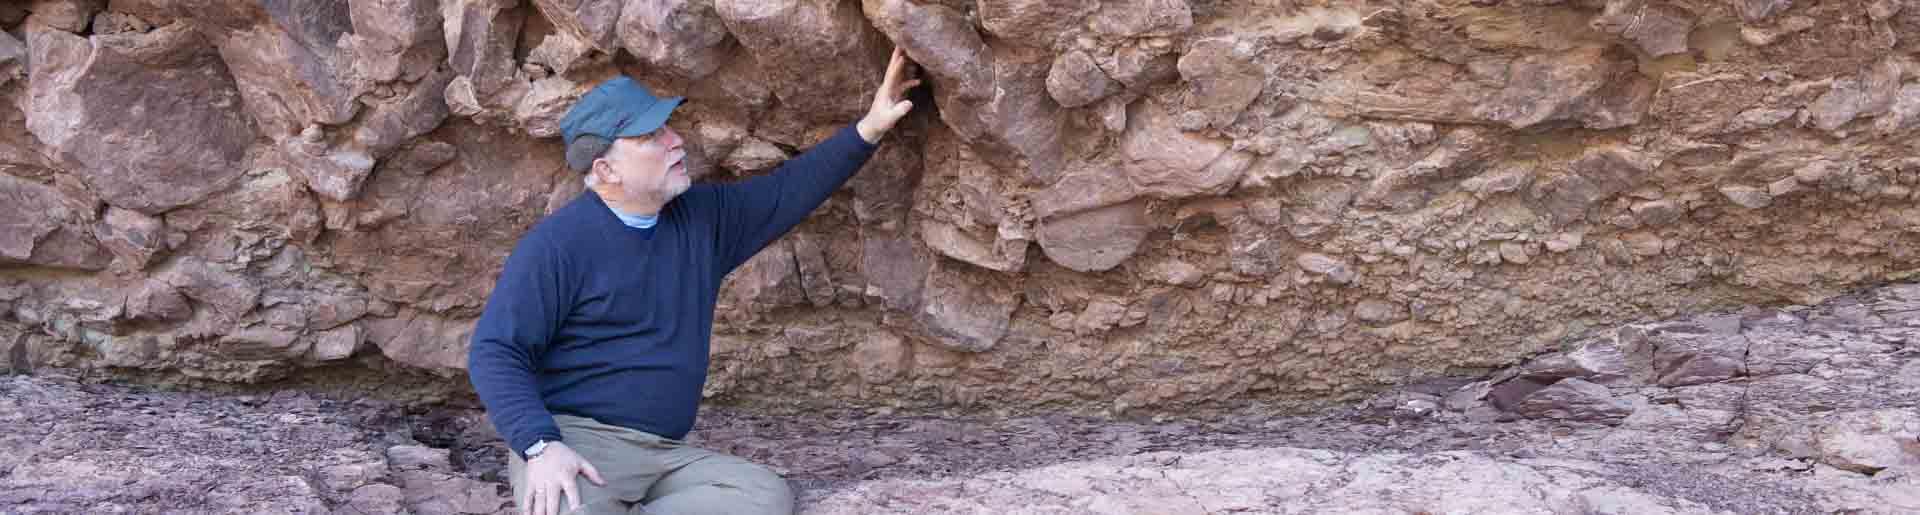 Dr. Whitmore at the Grand Canyon examining rocks.